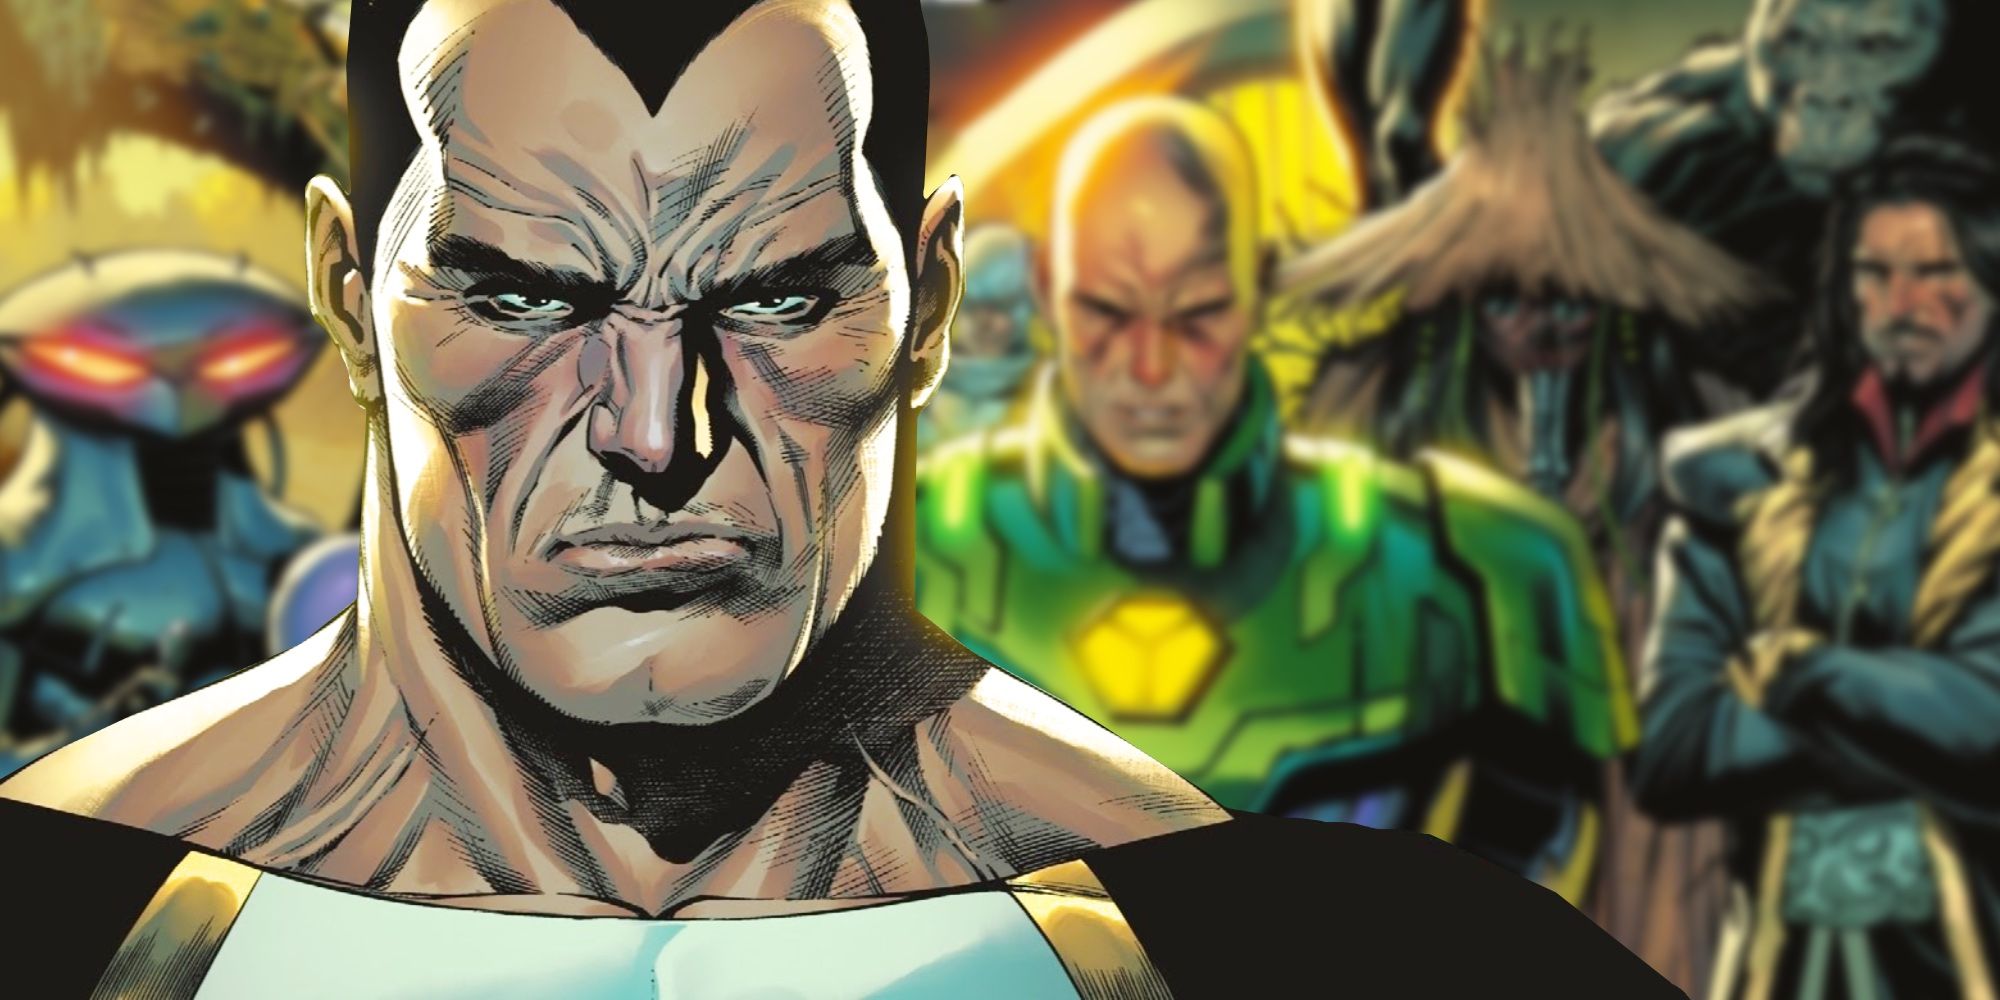 Black Adam recruiting Legion of Doom for Dark Crisis in DC Comics.